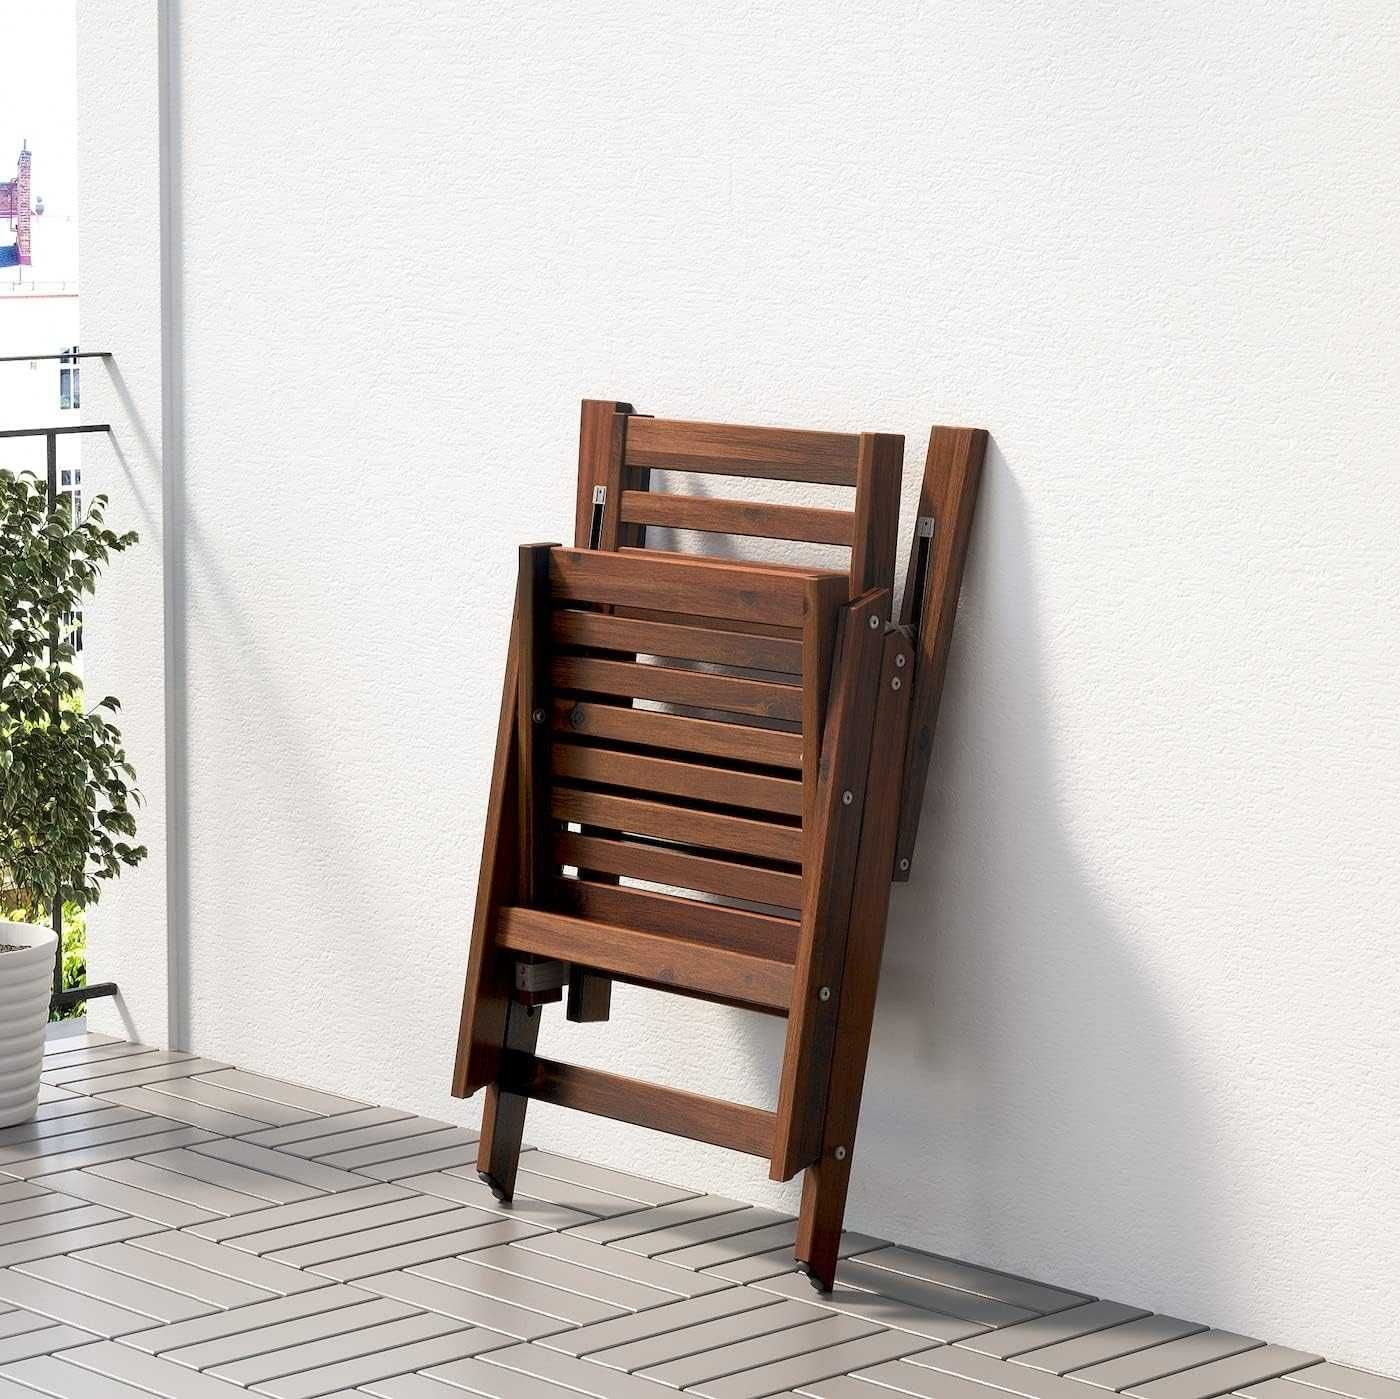 Scaun din lemn masiv, pentru terasa sau exterior, reglabil